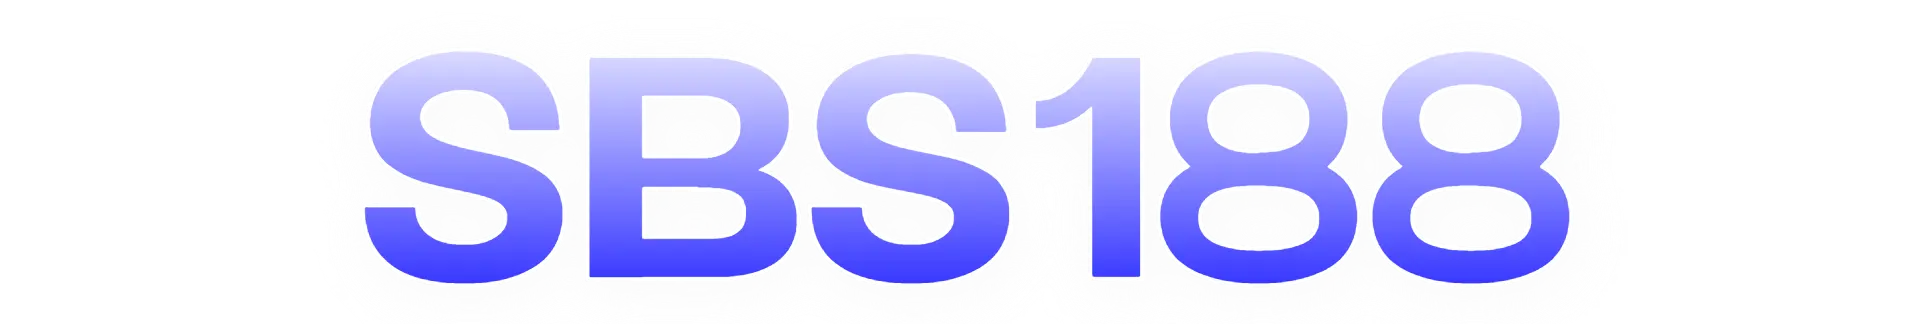 Sbs188